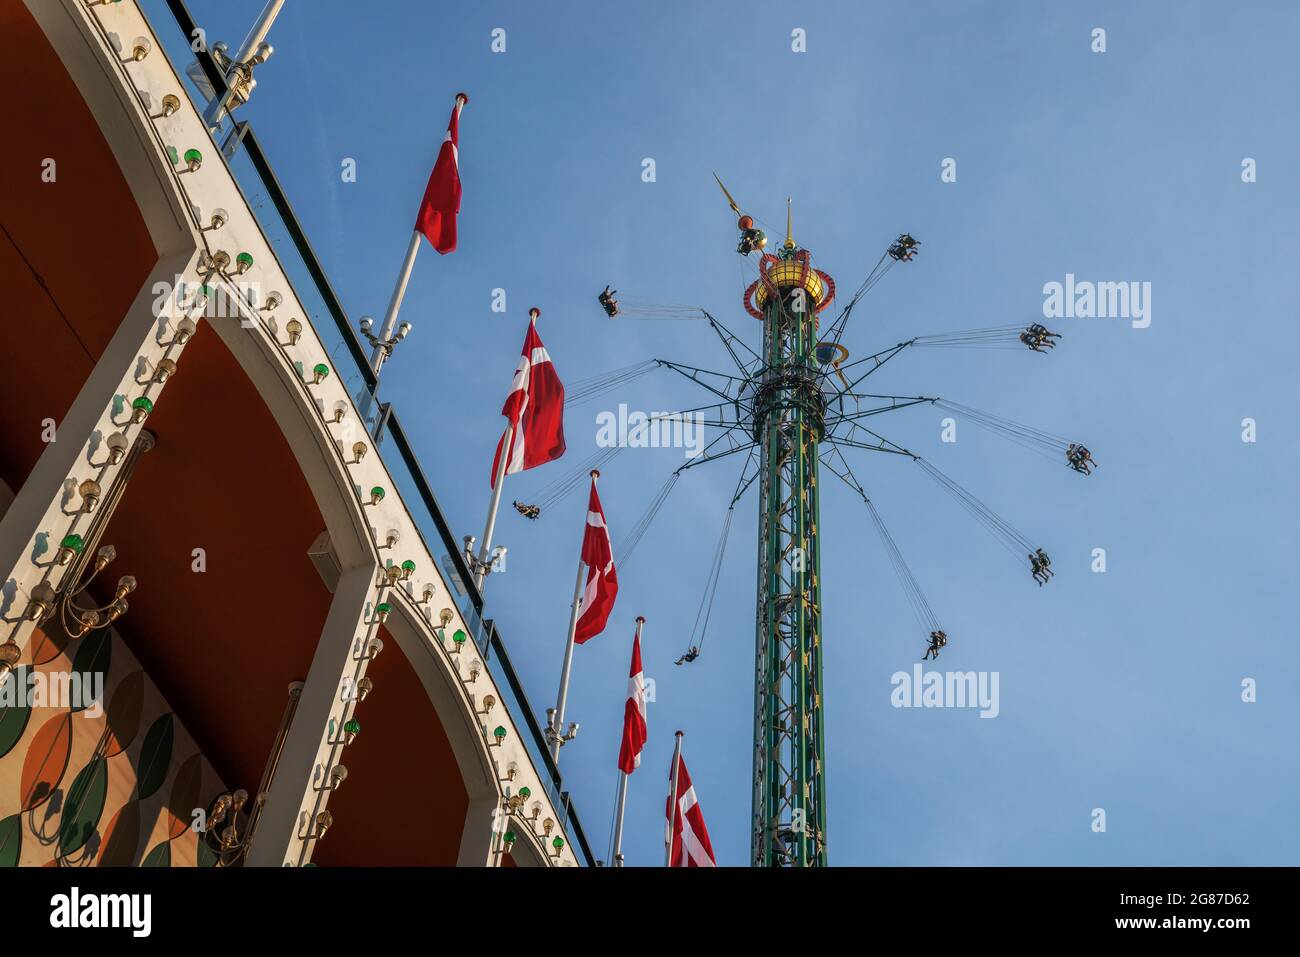 Viaje Star Flyer (Himmelskibet) y banderas danesas en el parque de atracciones Tivoli Gardens - Copenhague, Dinamarca Foto de stock